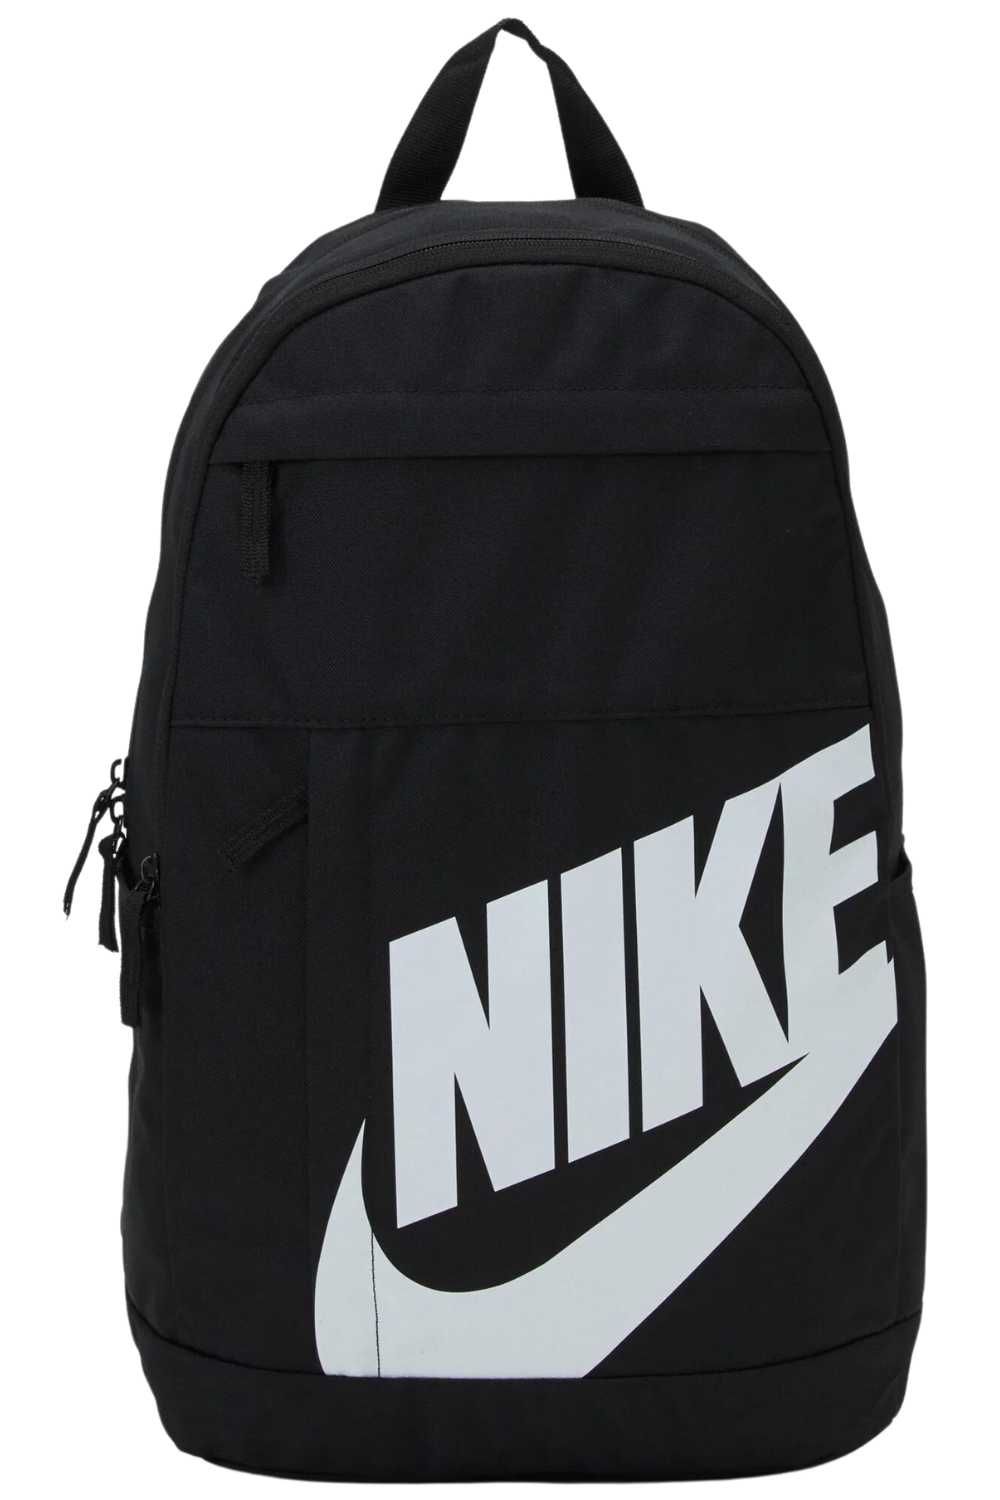 Plecak Nike szkolny sportowy wielokomorowy